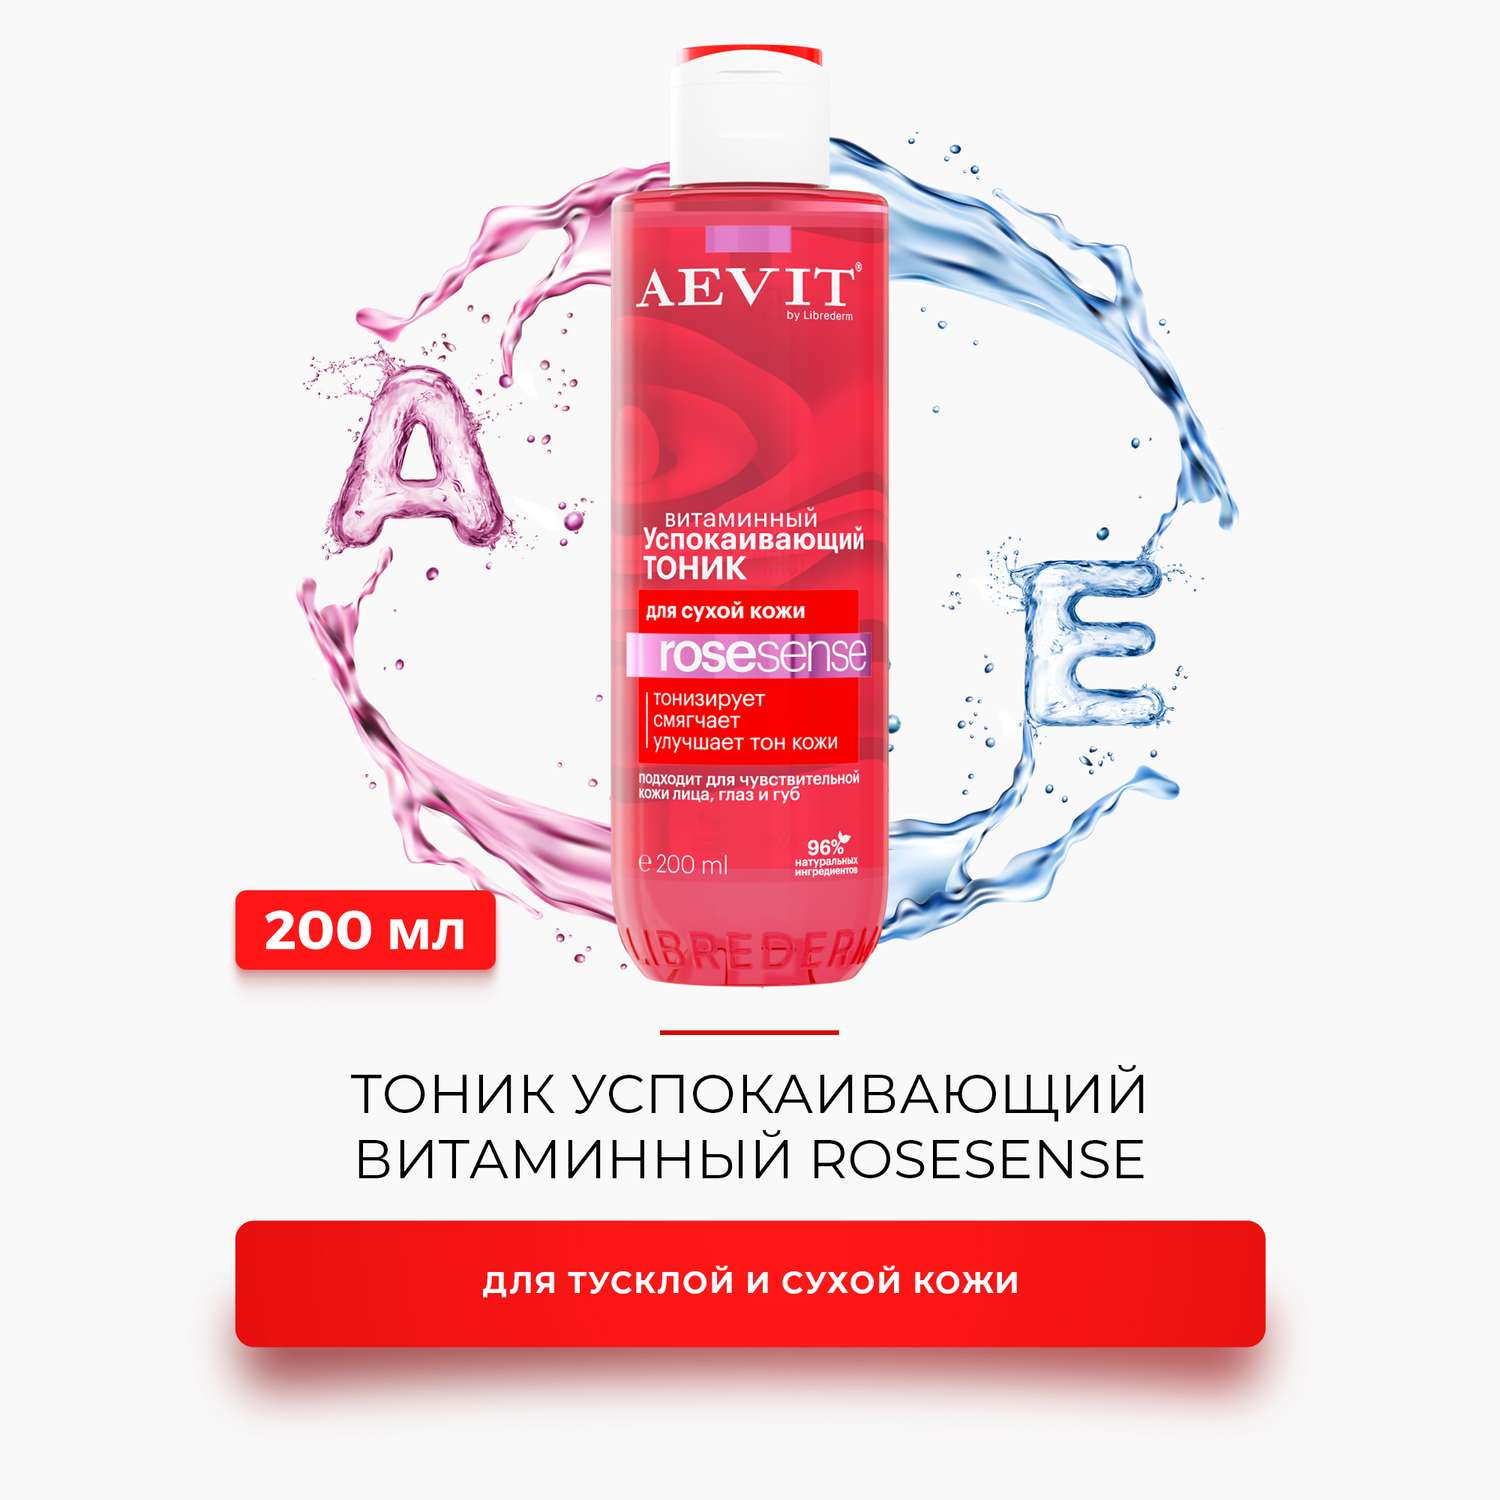 Тоник AEVIT успокаивающий витаминный для тусклой и сухой кожи 200 мл - фото 2